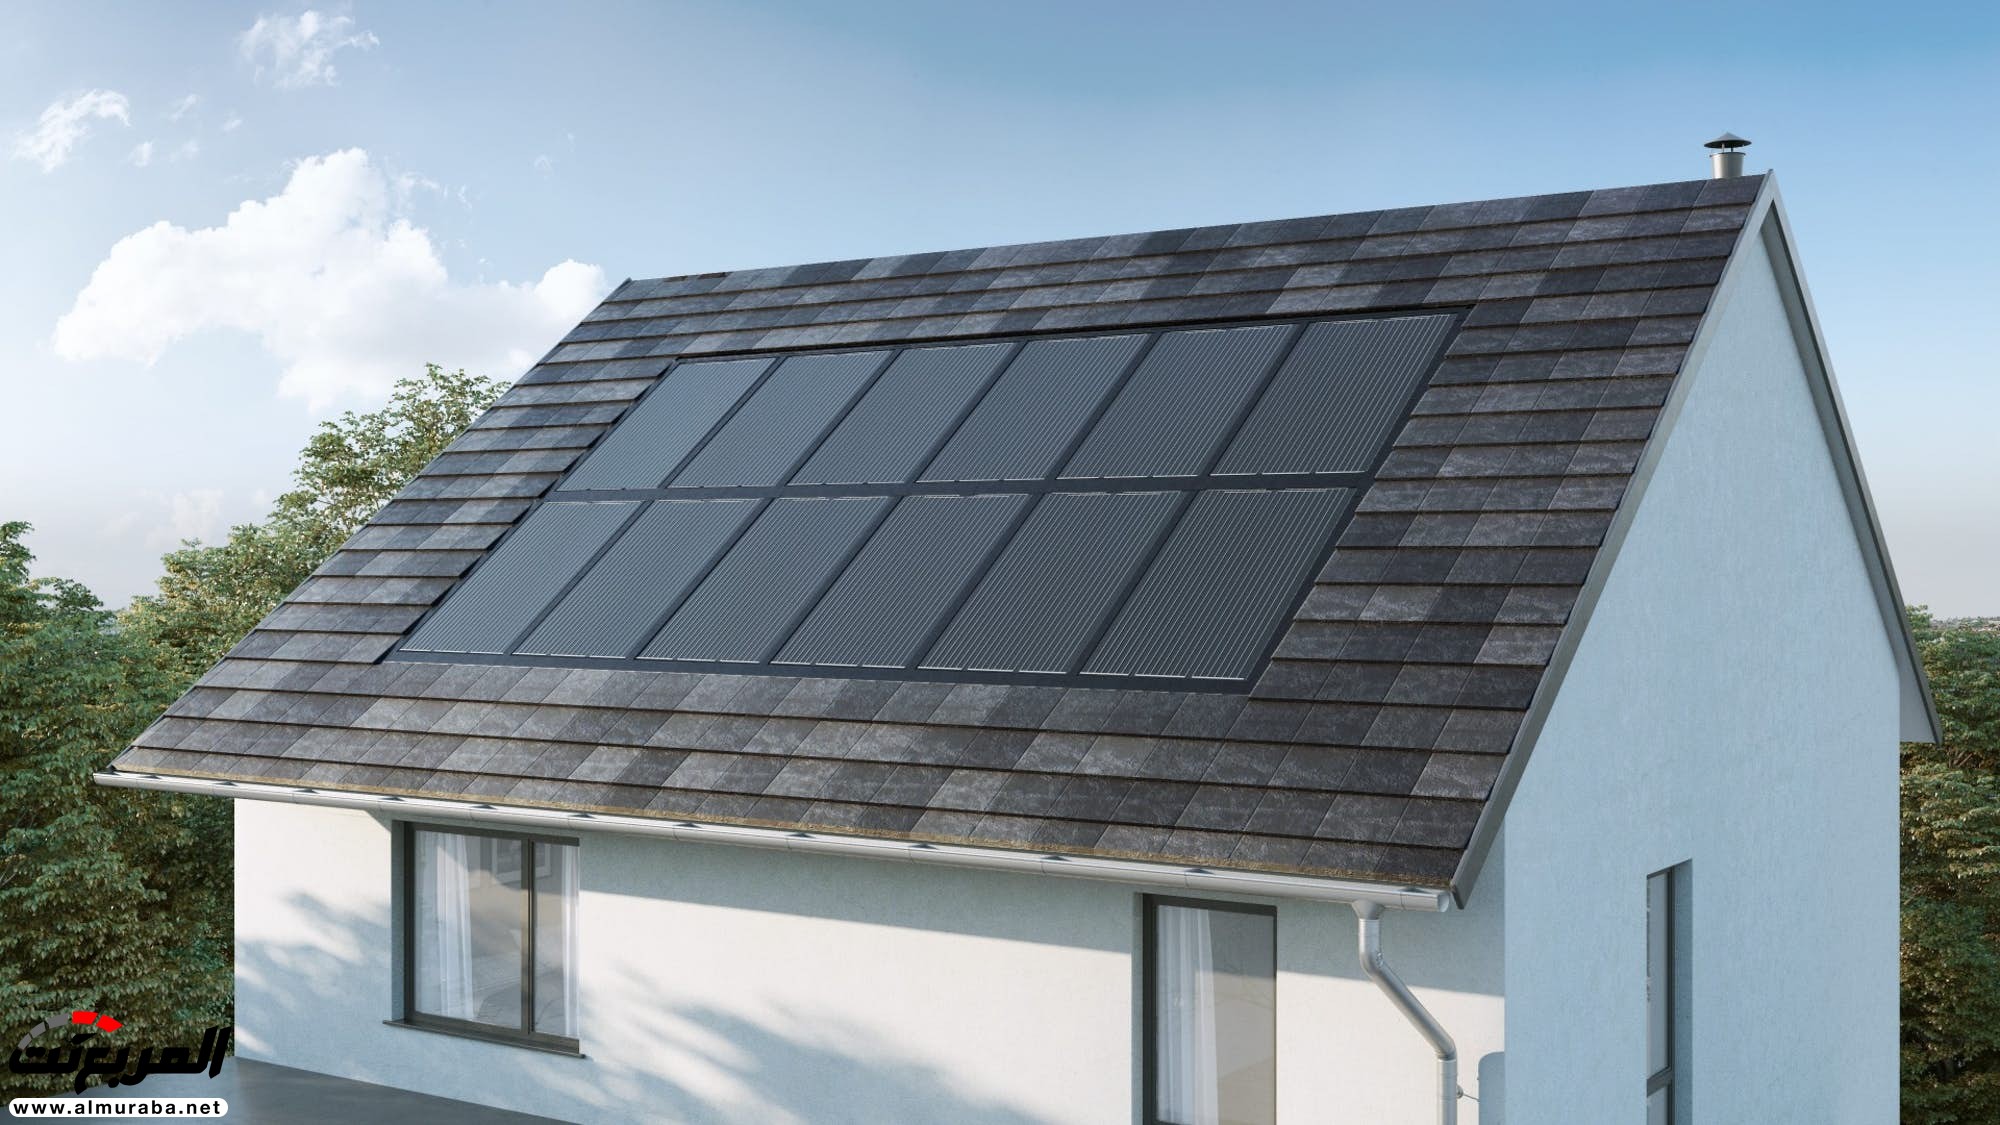 نيسان تطلق شركة تصنع ألواح شمسية وبطاريات لتخزين الطاقة 5